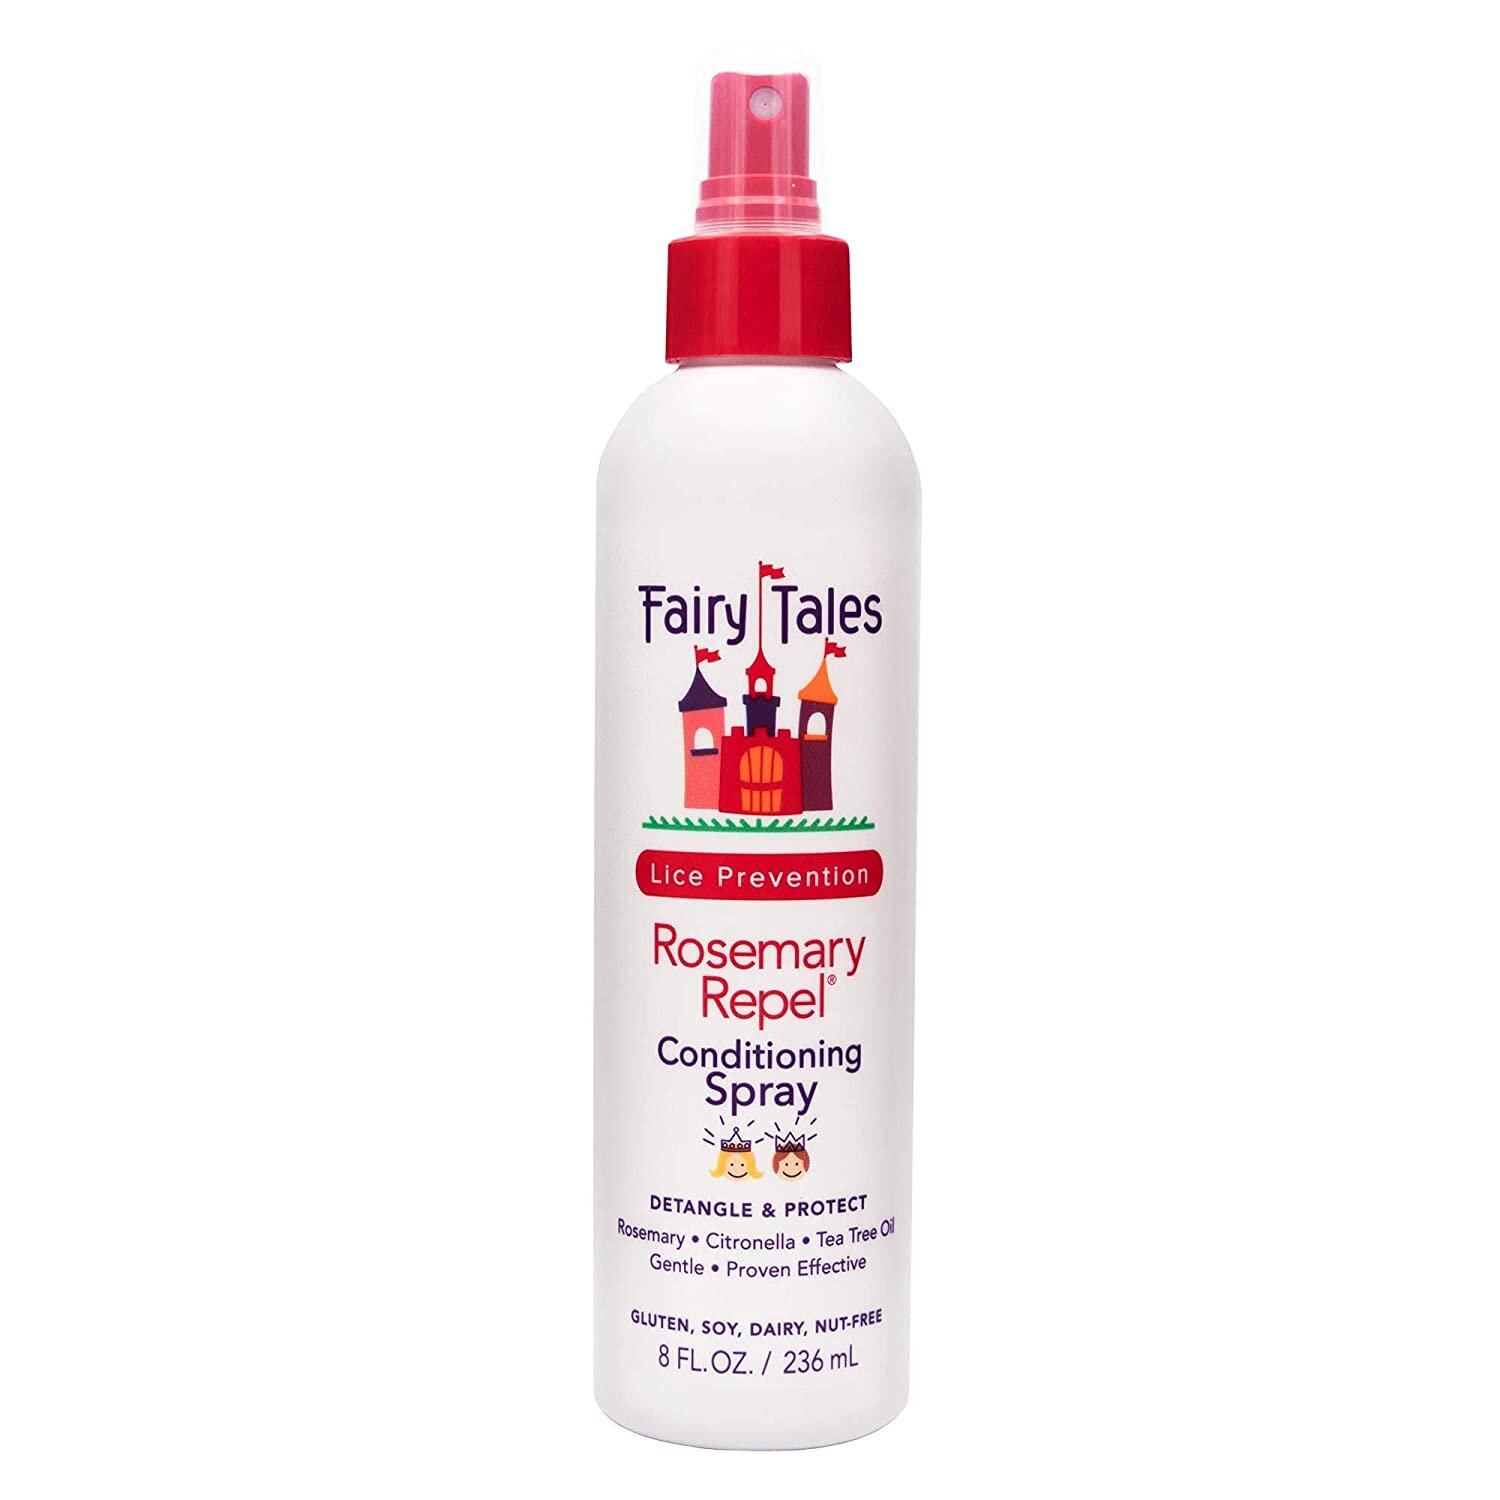 Fairy Tales Rosemary Repel Daily Kid Conditioning Spray - Amazon.jpg